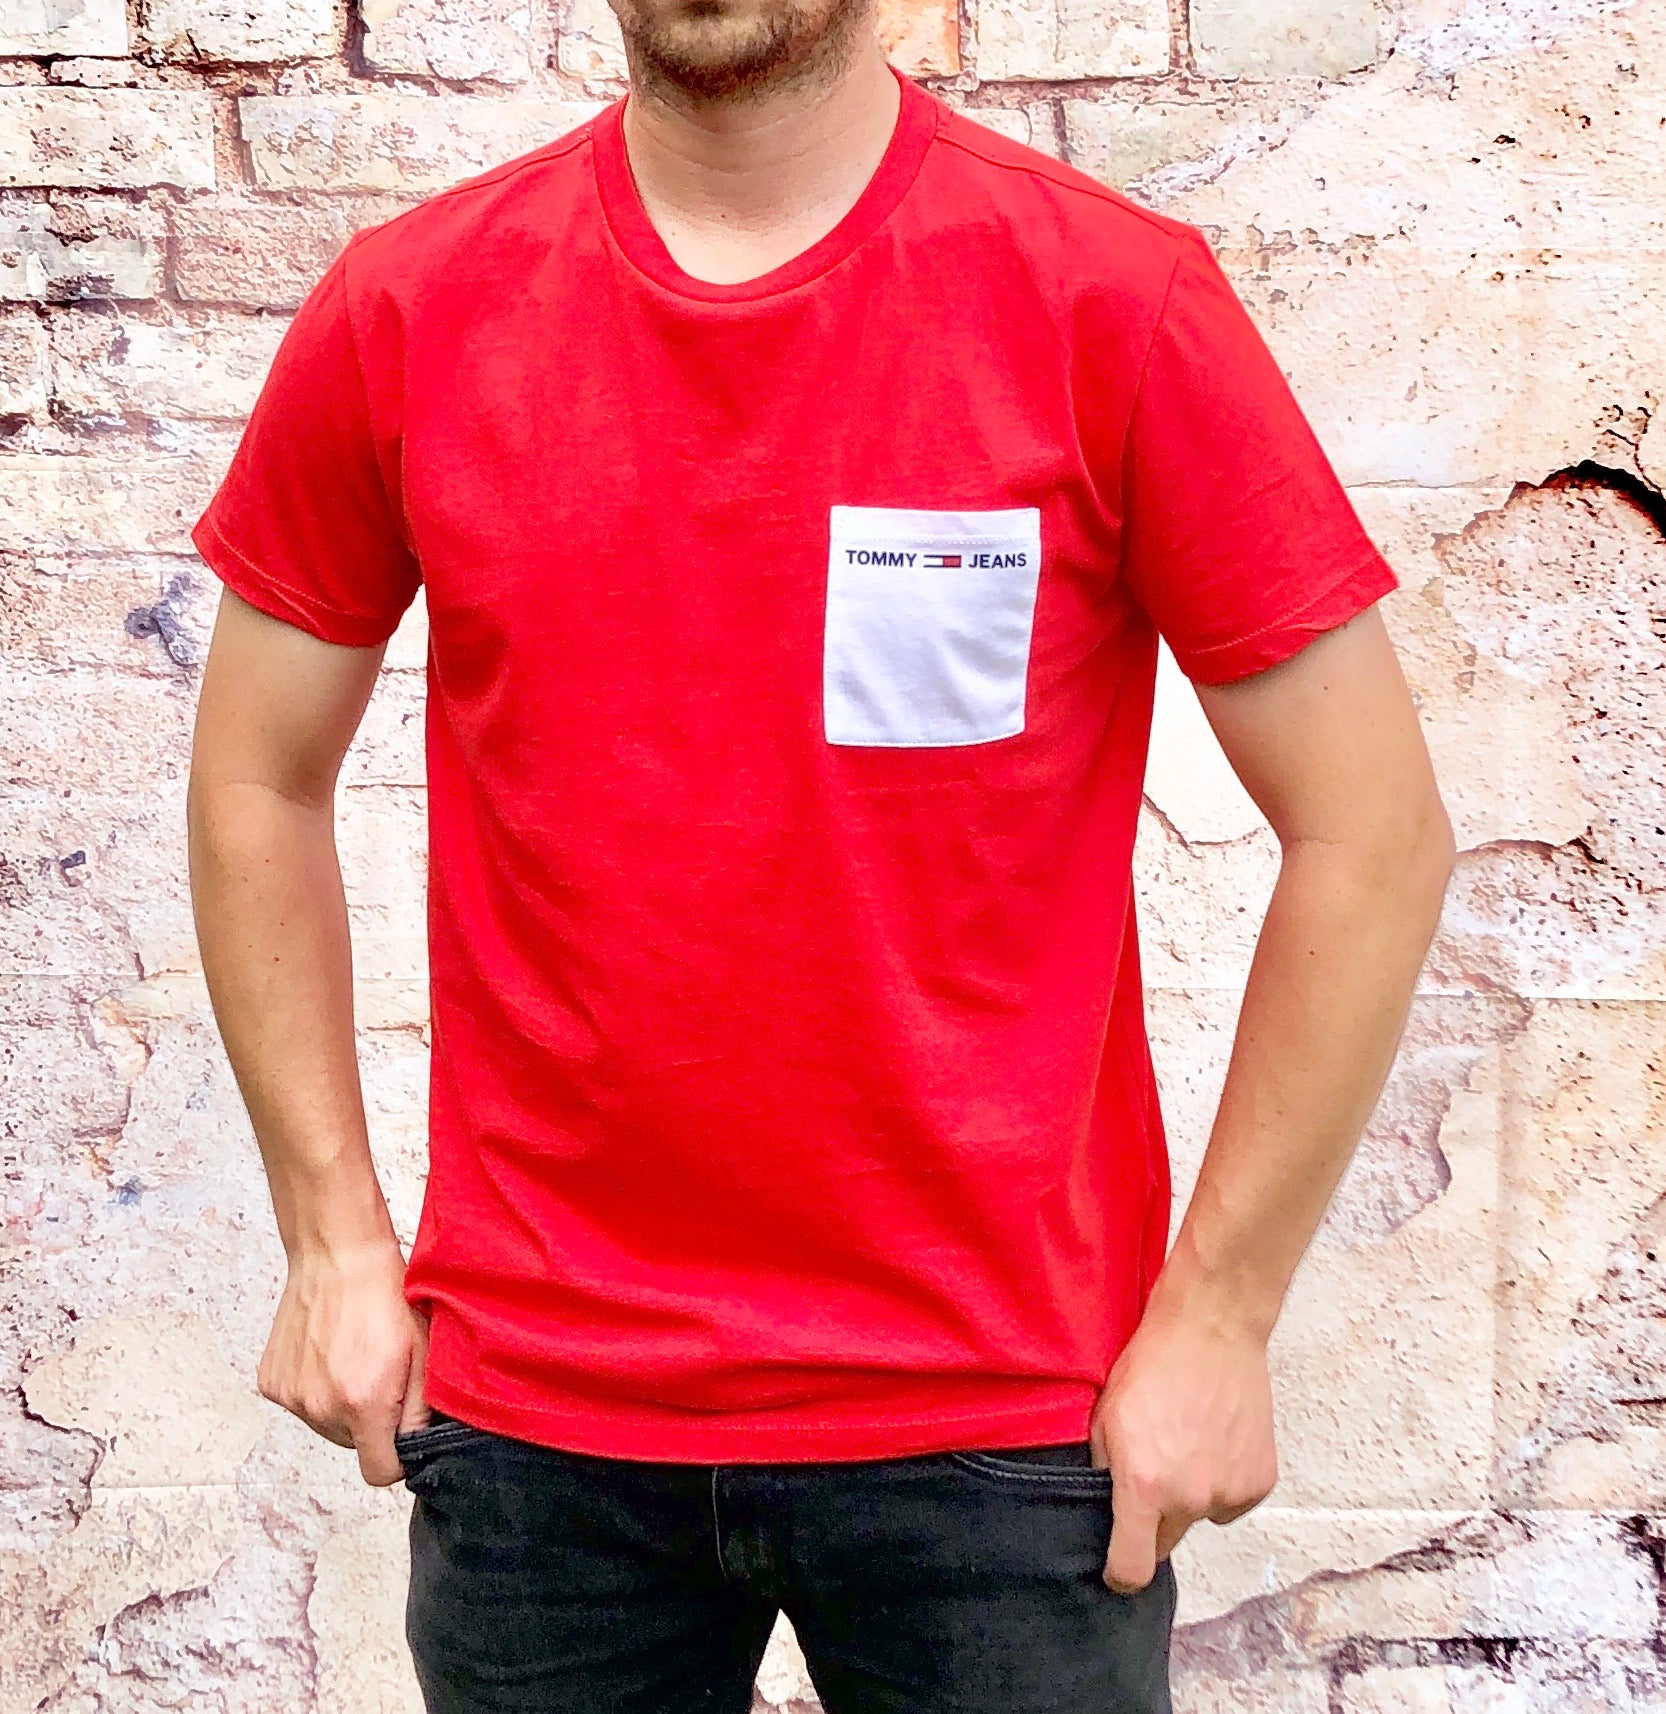 atleet musical kleermaker Red Tommy Hilfiger Jeans tshirt / tee shirt, men's branded designer –  System F